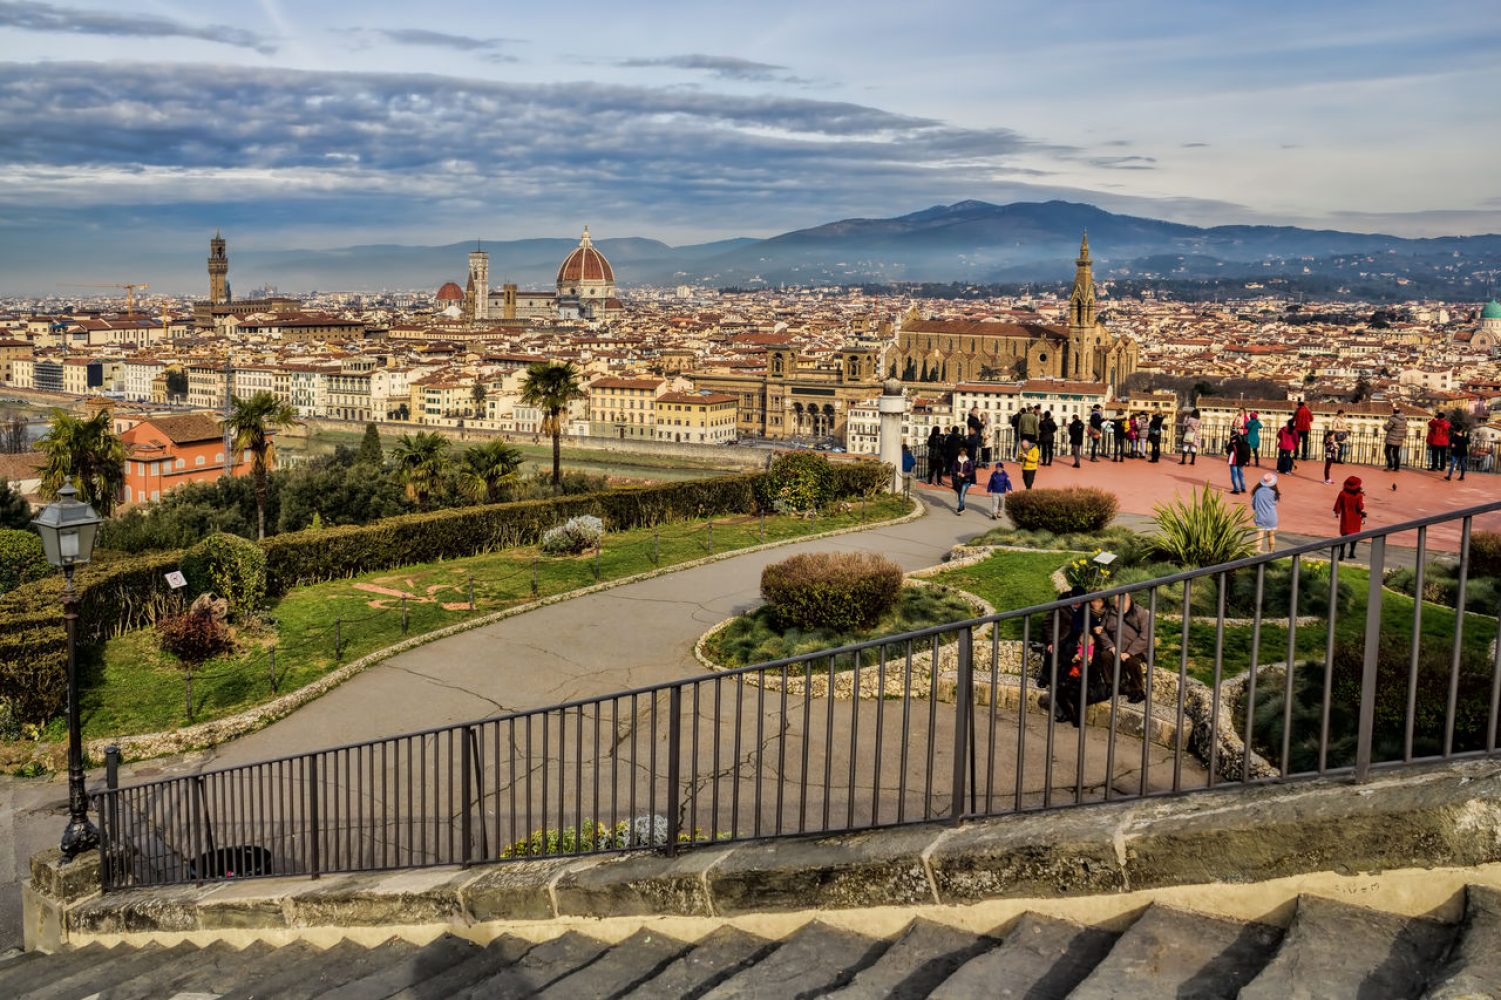 Piazzale Michelangelo El Mirador De Florencia Italiait 0182